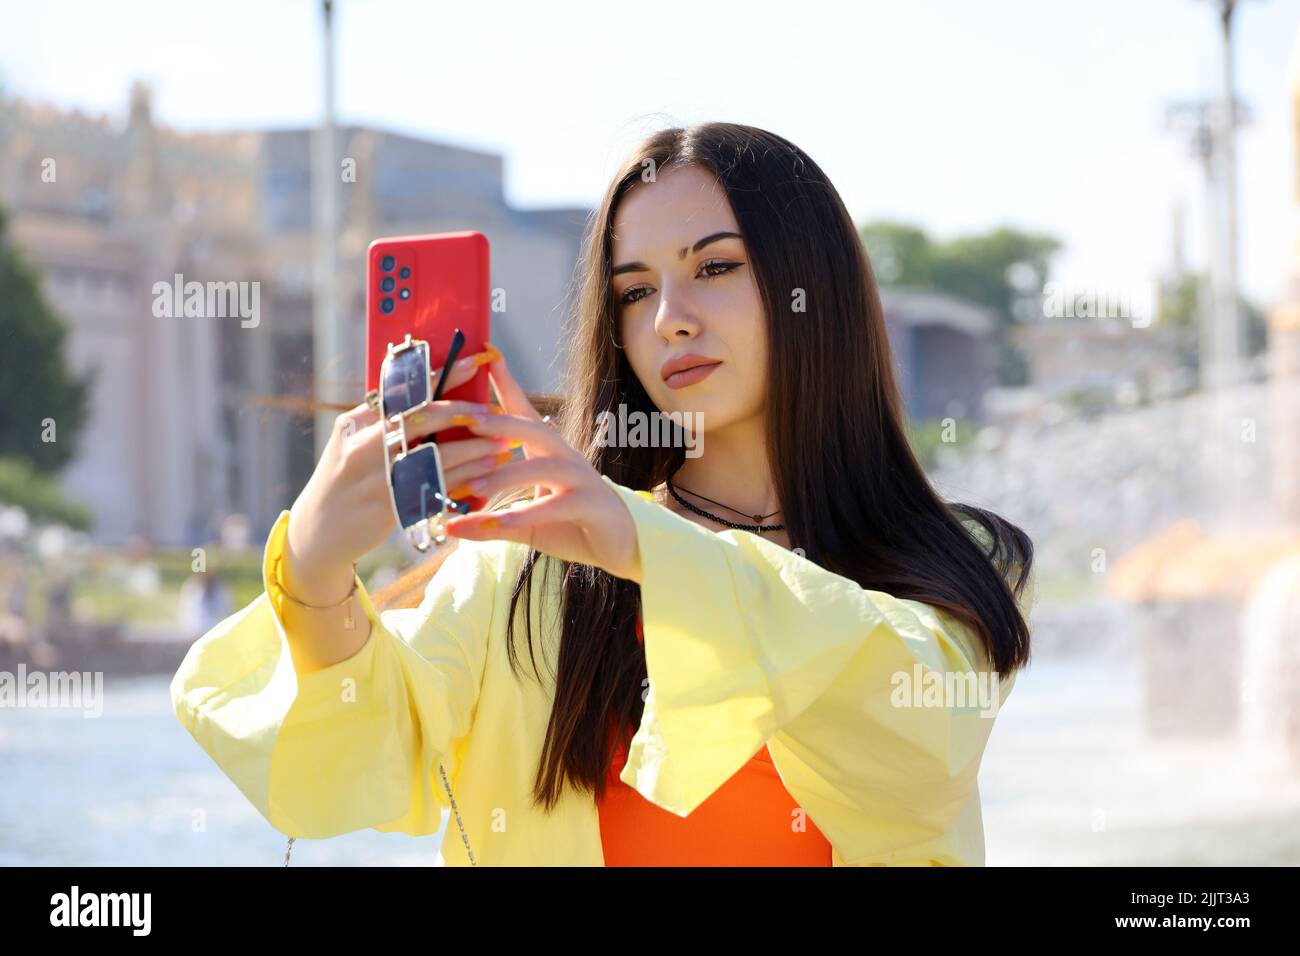 Ragazza attraente con capelli lunghi e trucco perfetto prendendo selfie su smartphone fotocamera in piedi su una strada. Bellezza femminile, turista in città d'estate Foto Stock